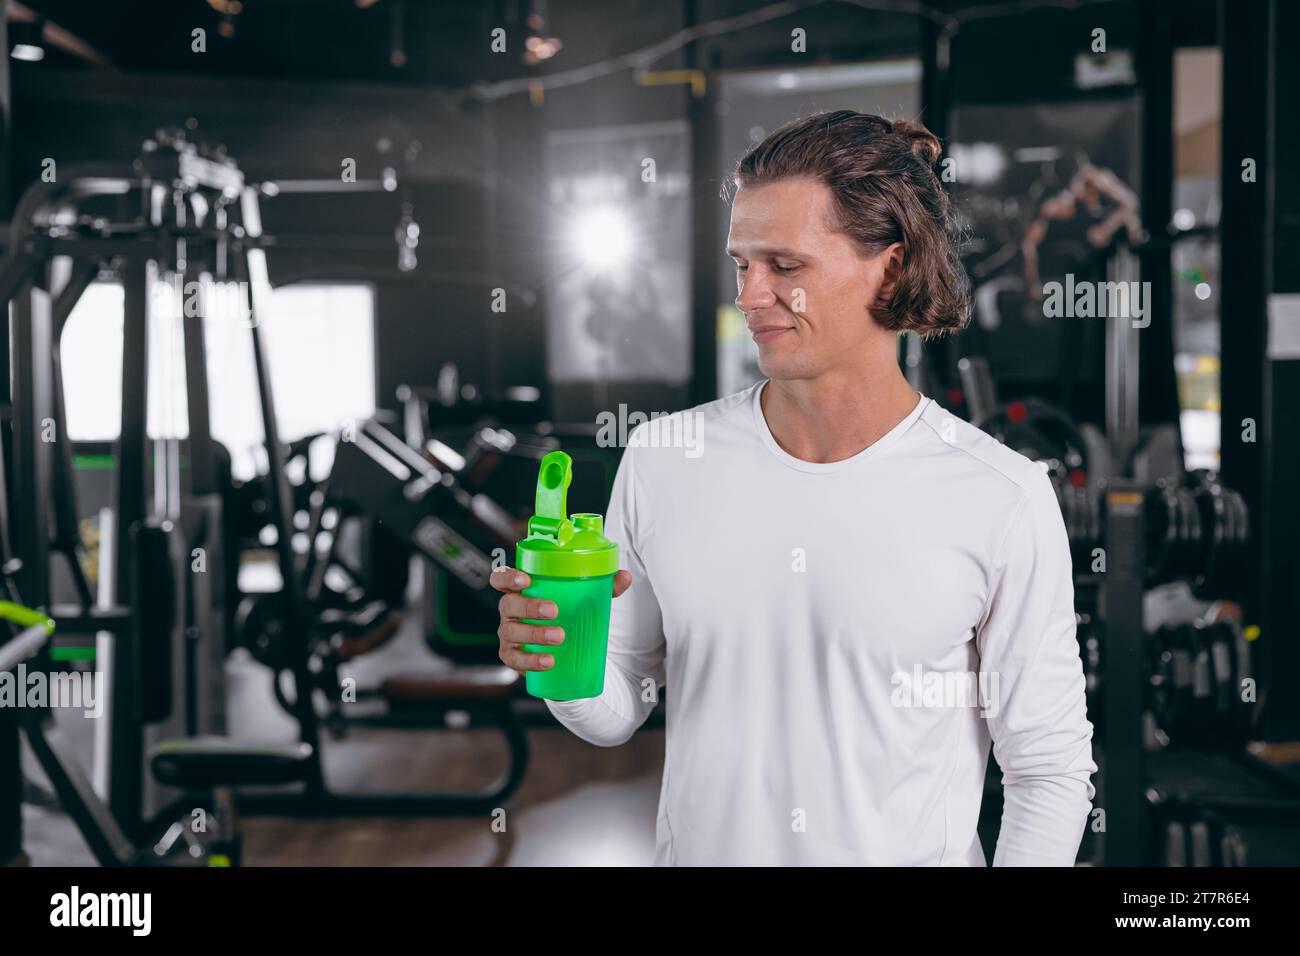 bel homme de fitness adulte tenant la main shaker de lactosérum pour boire heureux protéine de lactosérum pour le muscle sain Banque D'Images